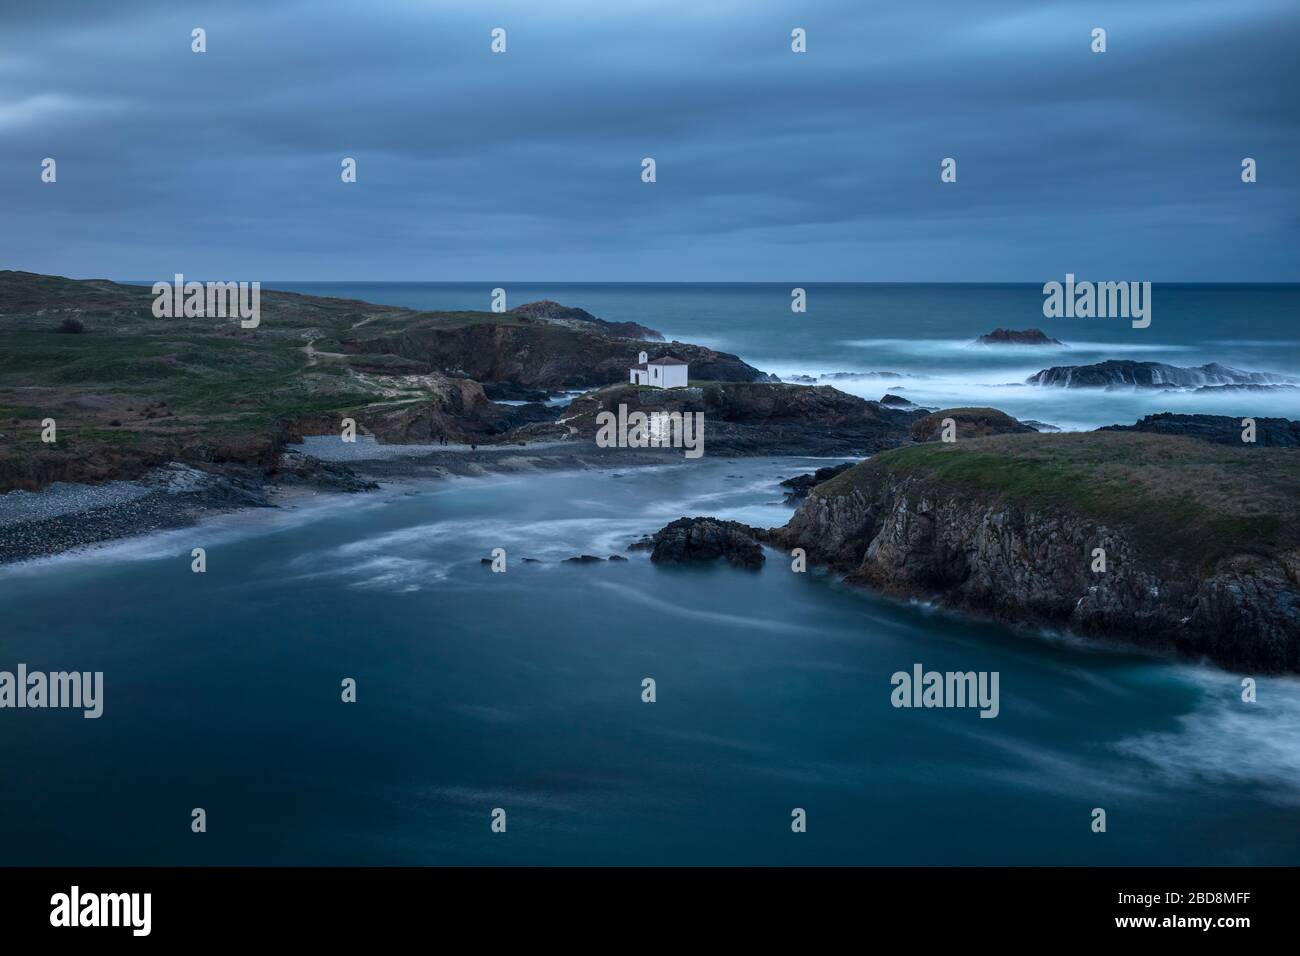 Eine Einsiedelei auf einer felsigen Insel an der spektakulären Küste Galiciens Stockfoto